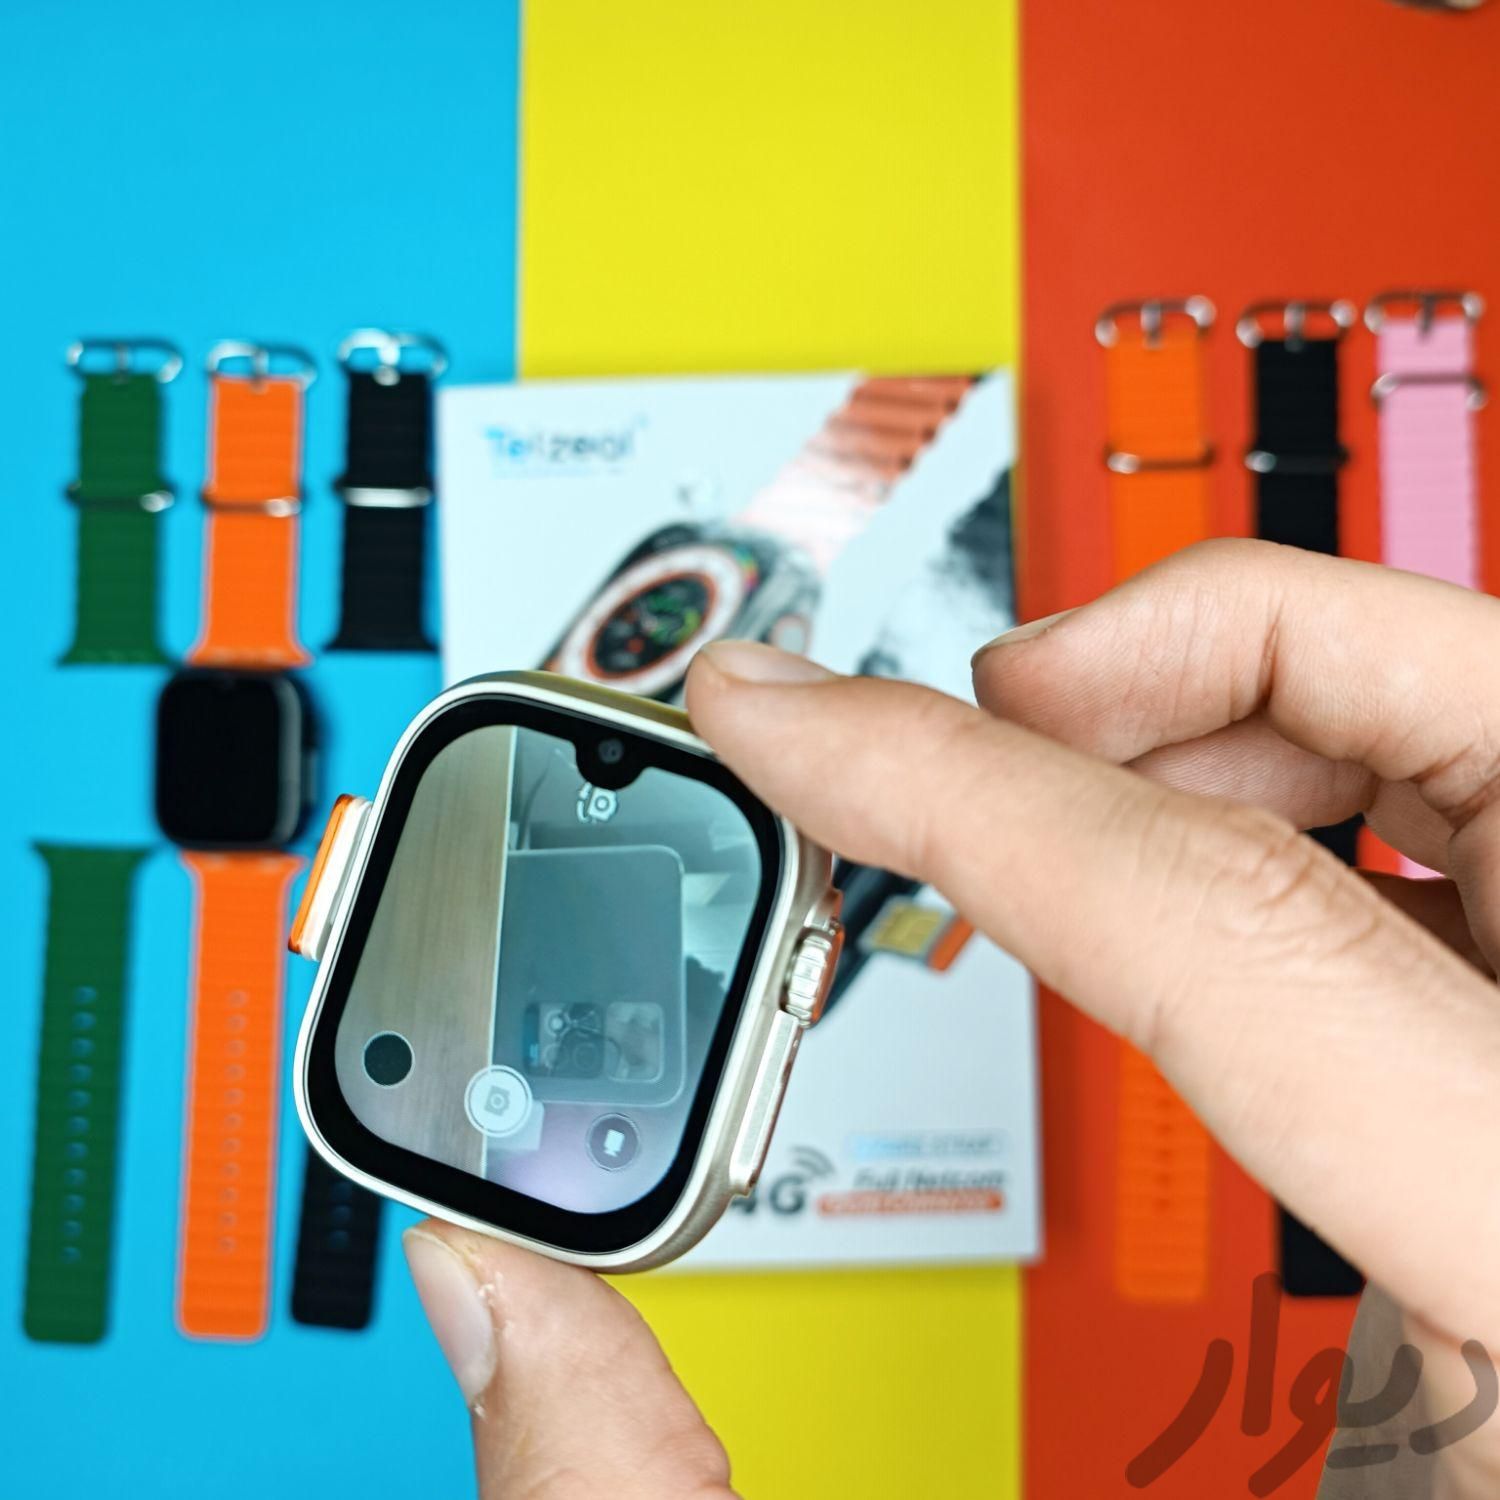 ساعت هوشمند سیم کارت خور به همراه دوربین مدل Telzeal TC4G بدون ریجستر